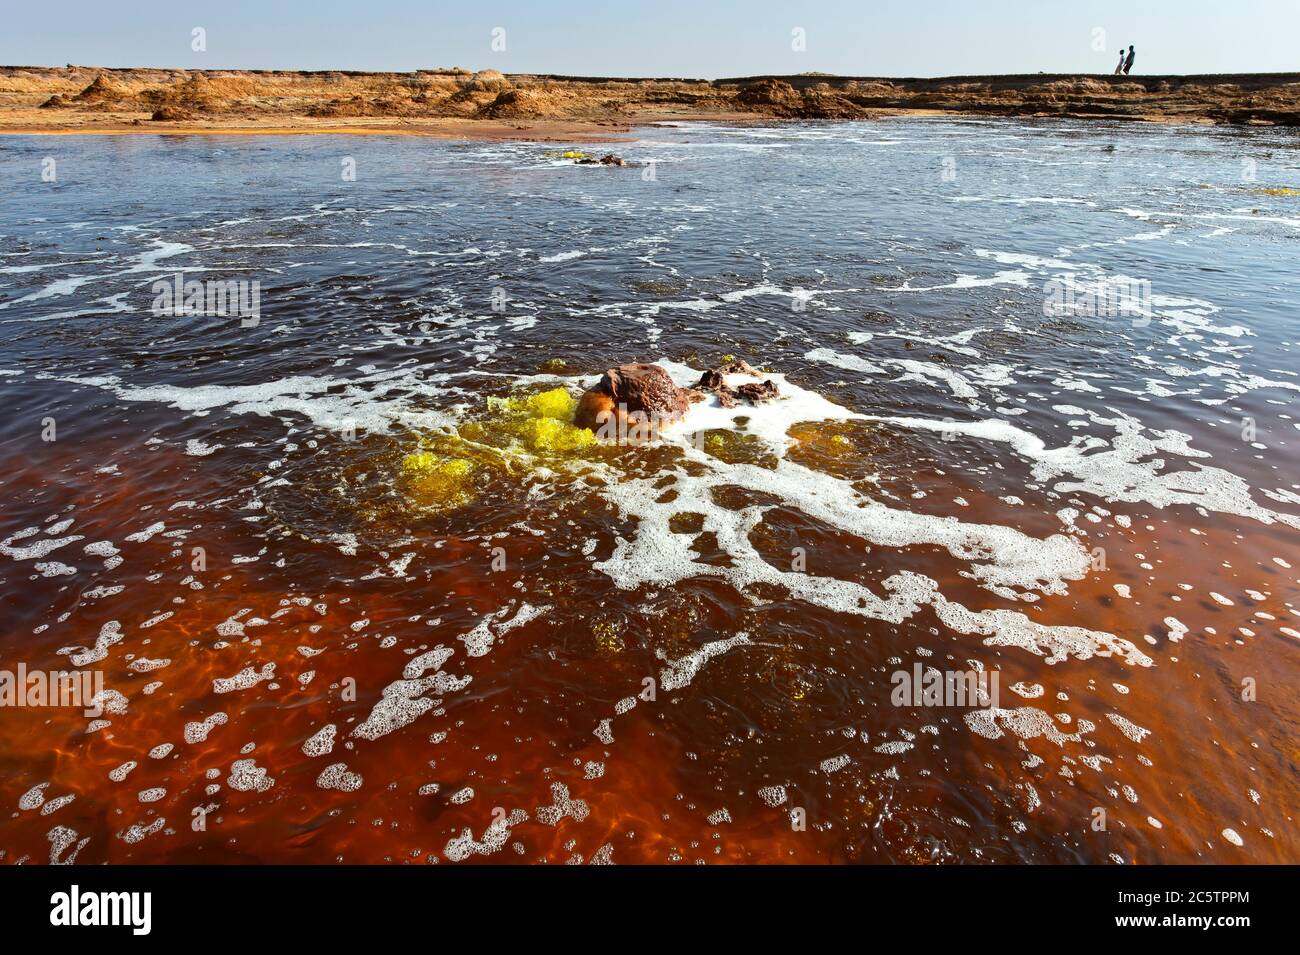 Fuentes burbujeantes de agua hipersalina en el estanque caliente de Gaet'ale, también estanque de petróleo, área geotérmica de Dallol, Hamadela, depresión de Danakil, Etiopía Foto de stock